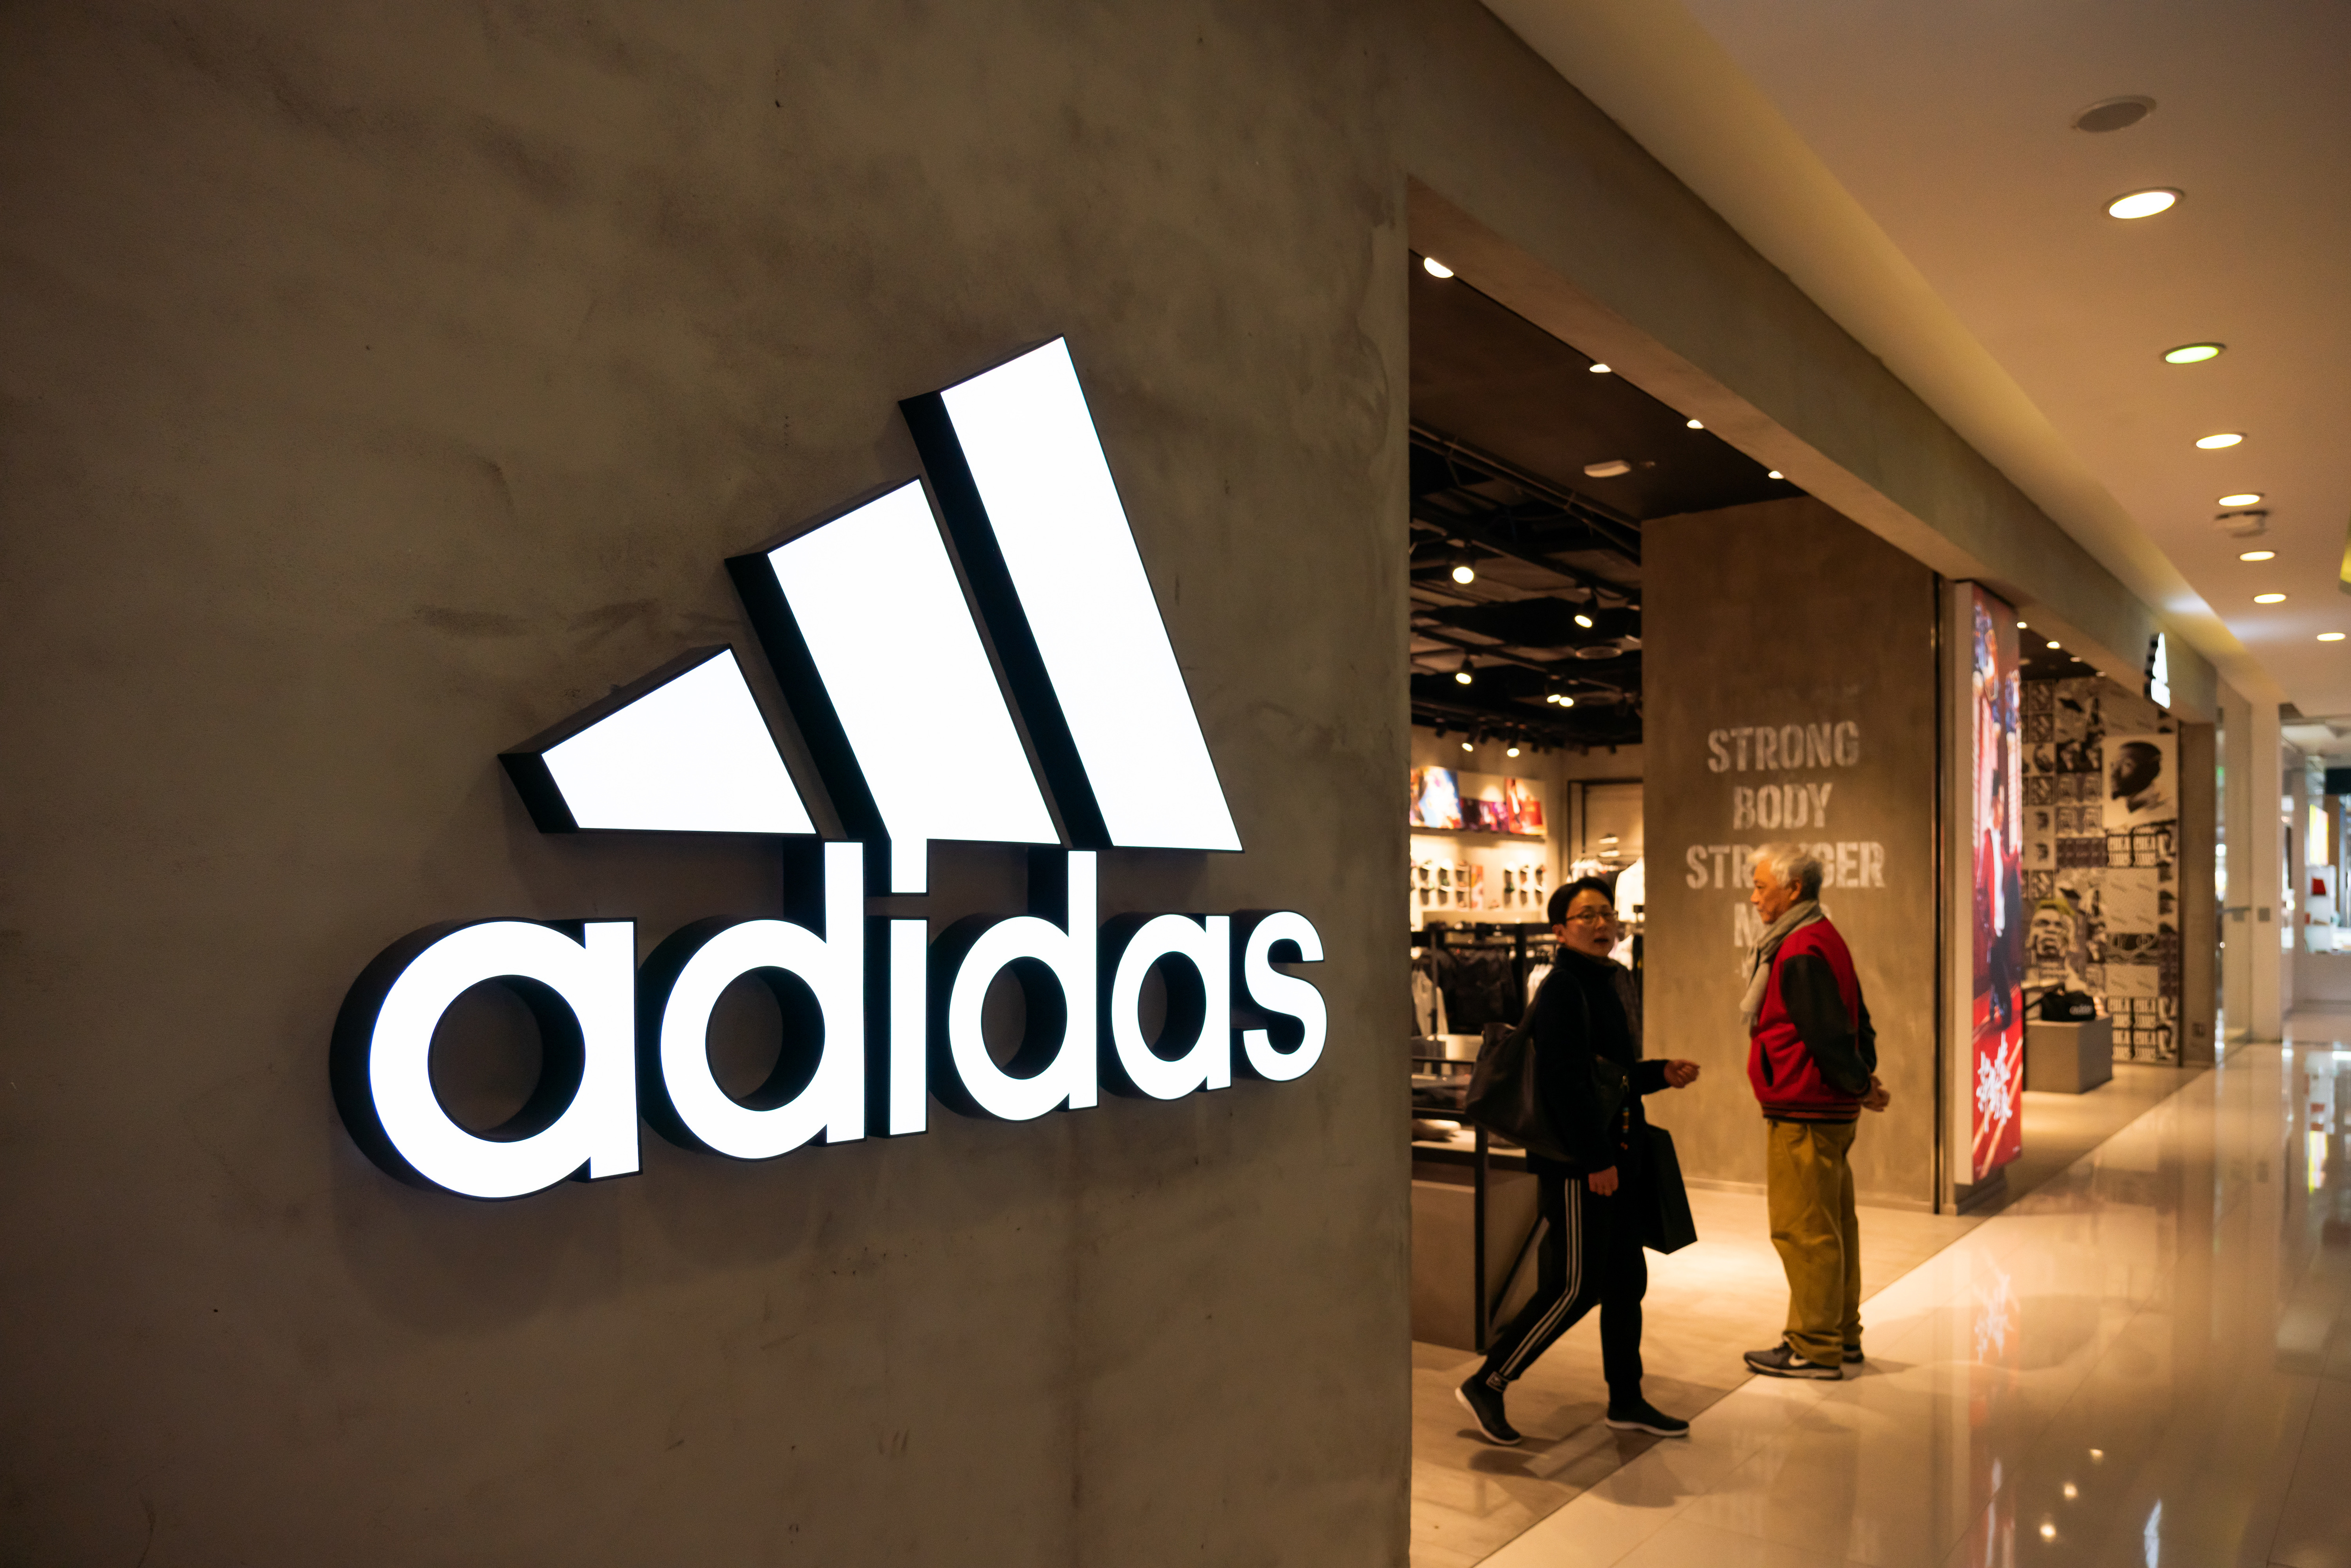 Adidas - pracownicy oskarżają firmę o rasizm. Odchodzi szefowa HR